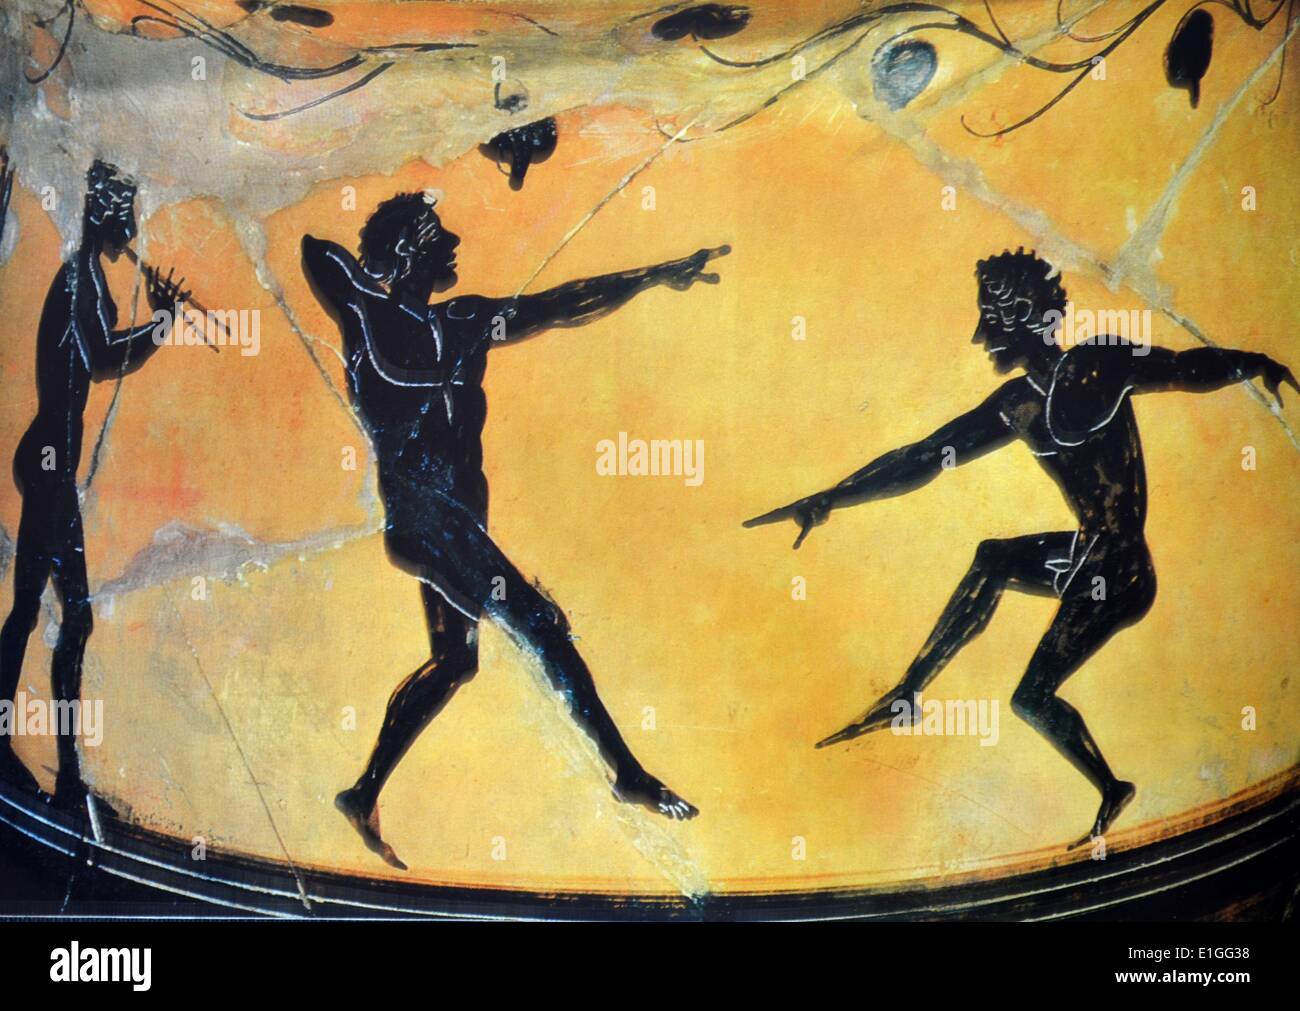 Boeotian Jar. Dos hombres jóvenes se muestran bajo una pérgola de hojas bailando al ritmo de la música de la flauta doble. Representado 300 B.C. Foto de stock